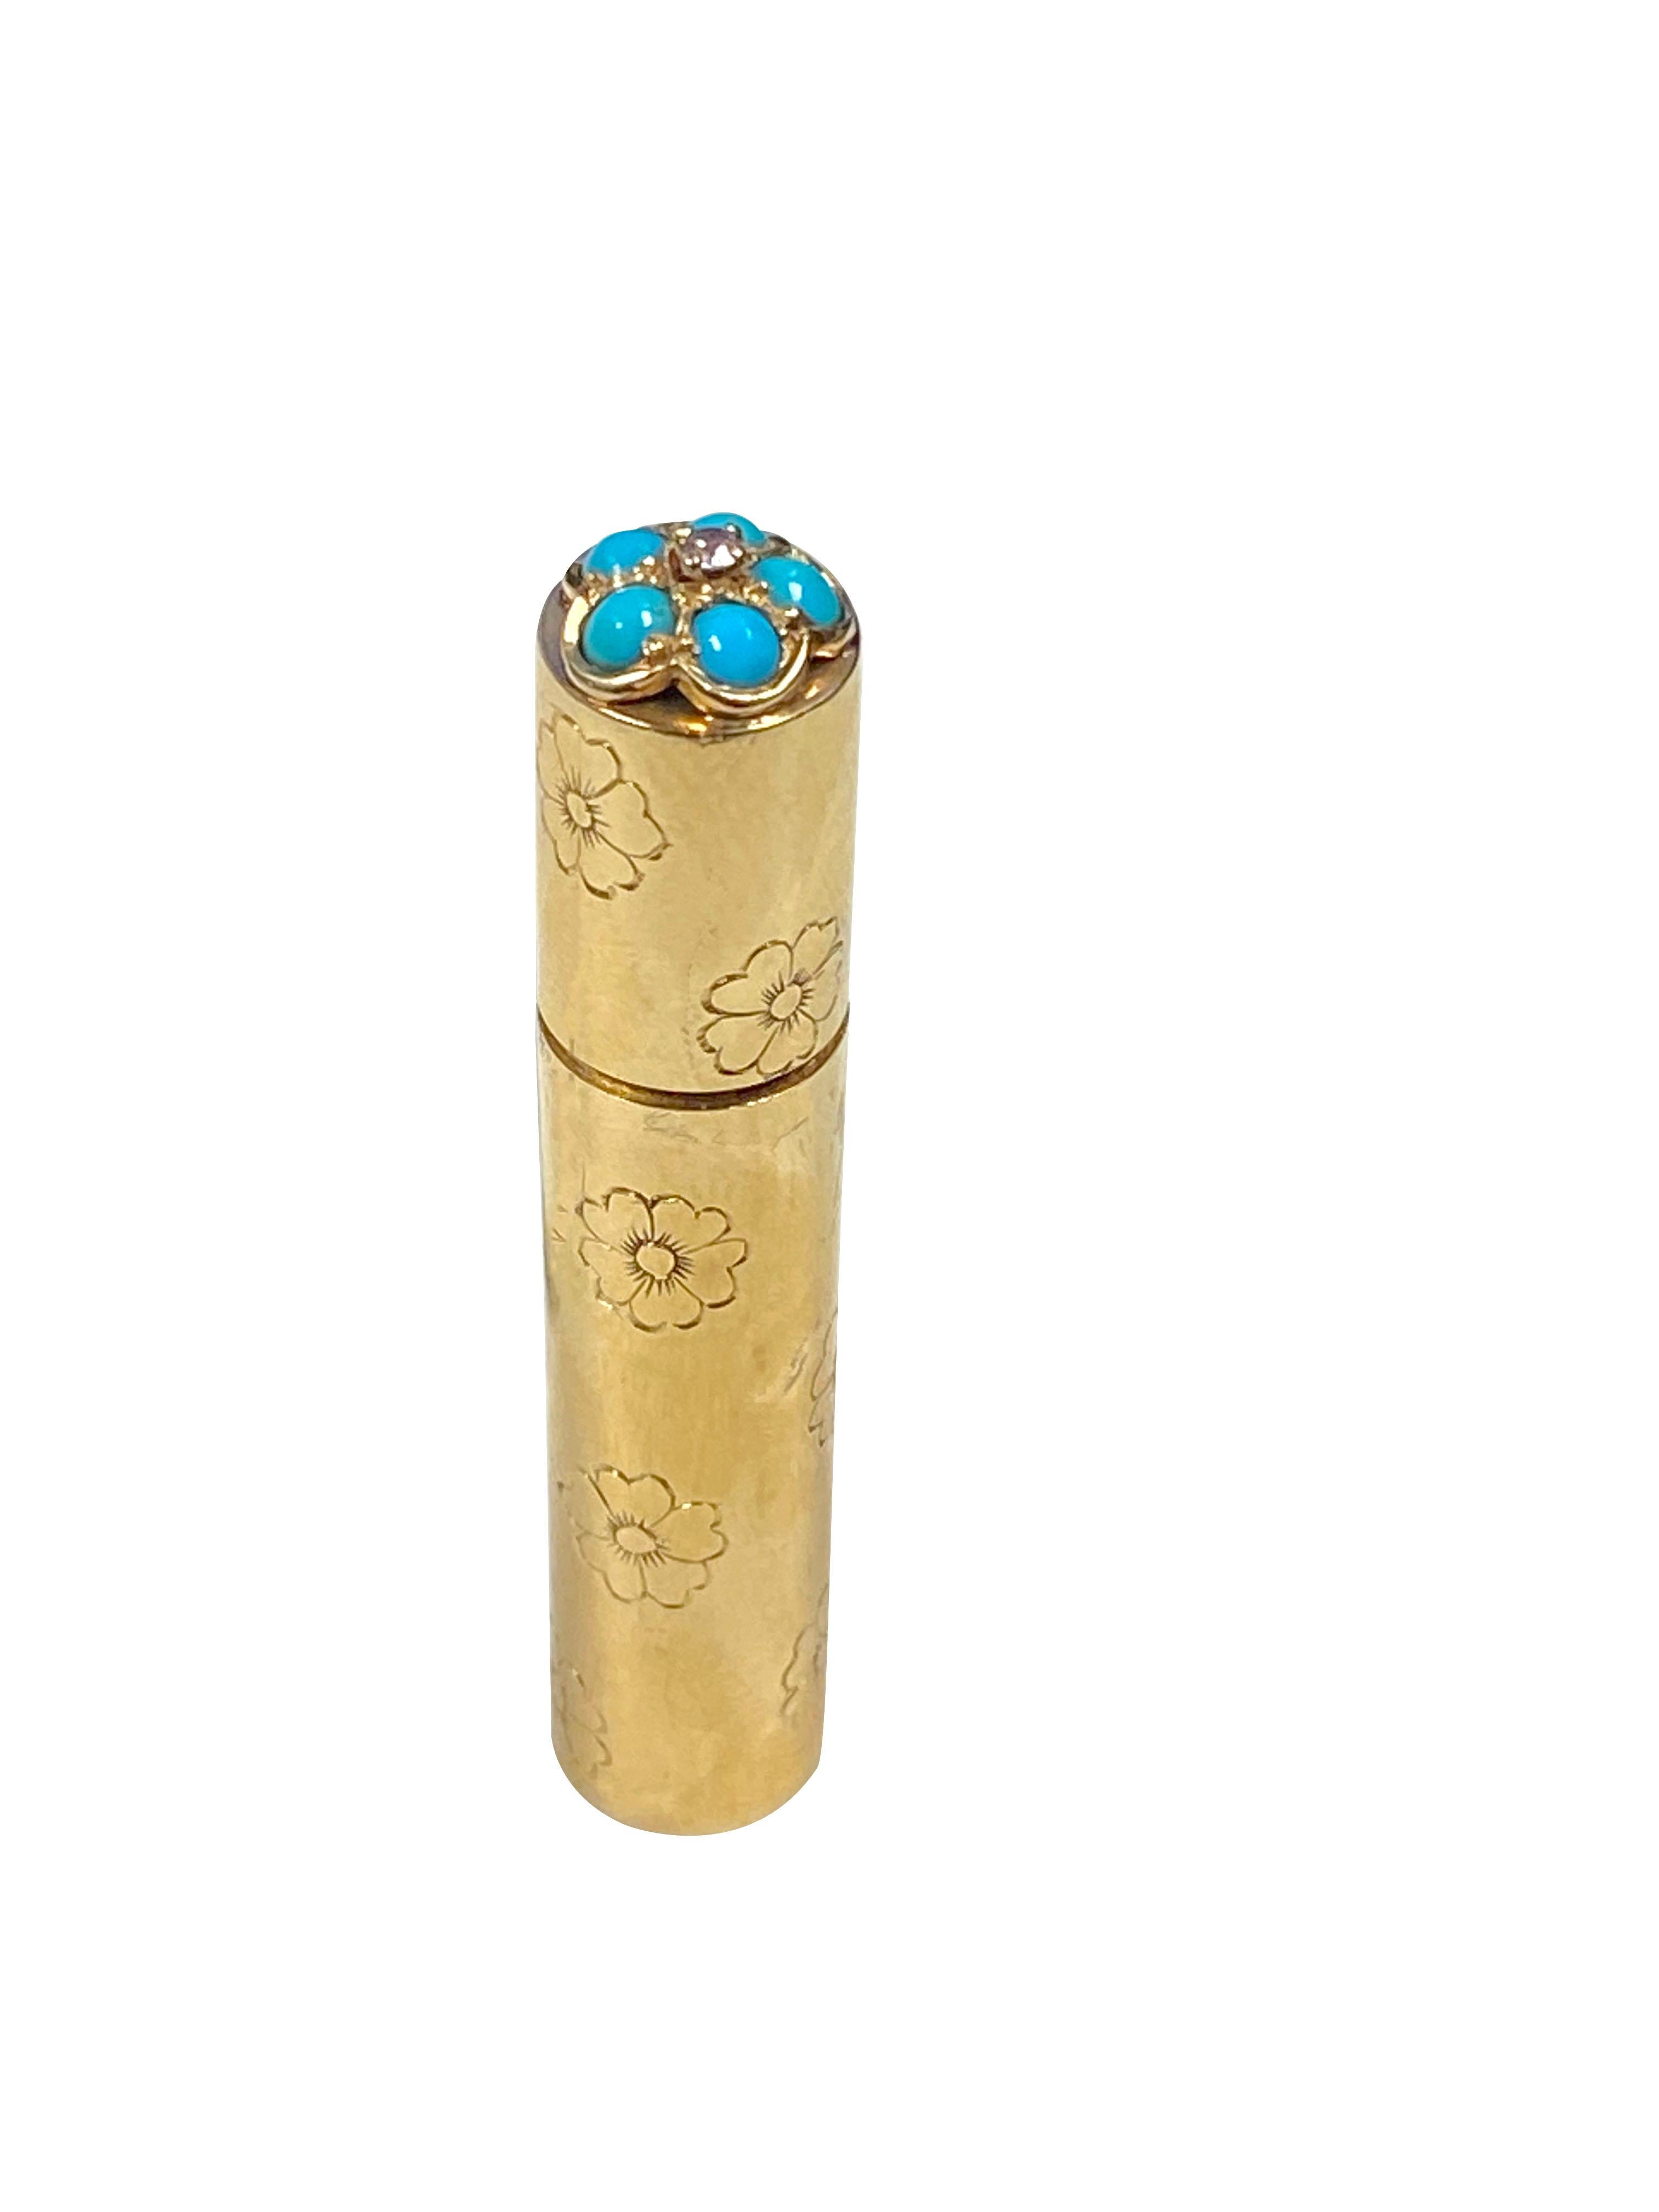 Parfum en or jaune 18 carats Van Cleef & Arpels des années 1950, mesurant 2 3/8 pouces de hauteur, 7/16 pouces de diamètre et pesant 21 grammes. Les fleurs sont gravées à la main et le sommet est serti de turquoises et d'un diamant. 